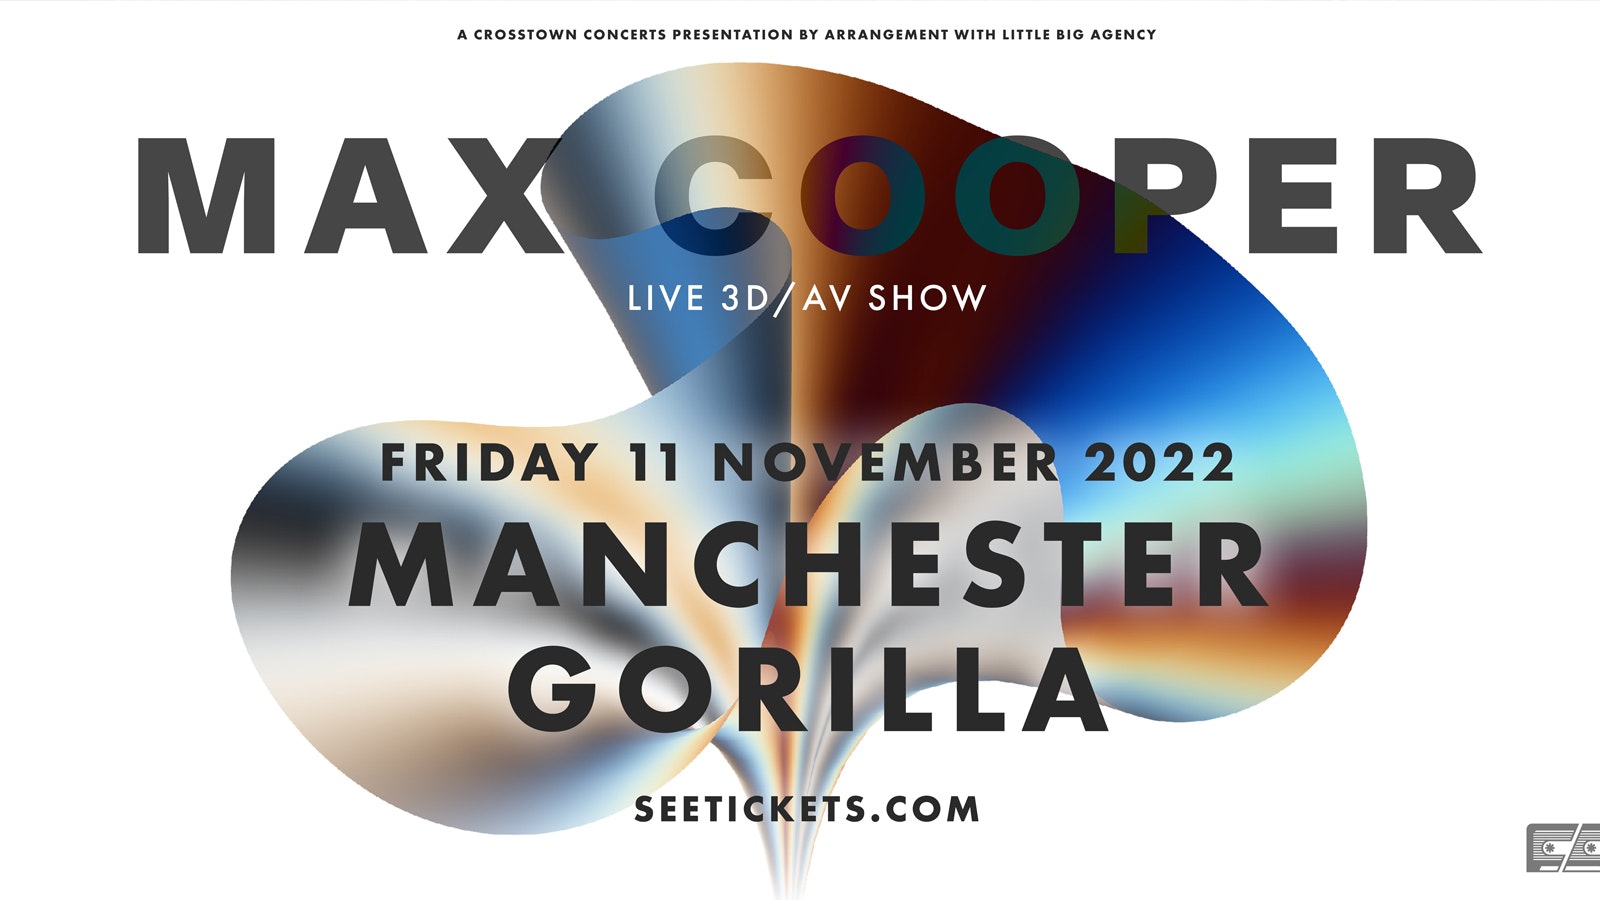 Max Cooper – postponed – new date 9 December